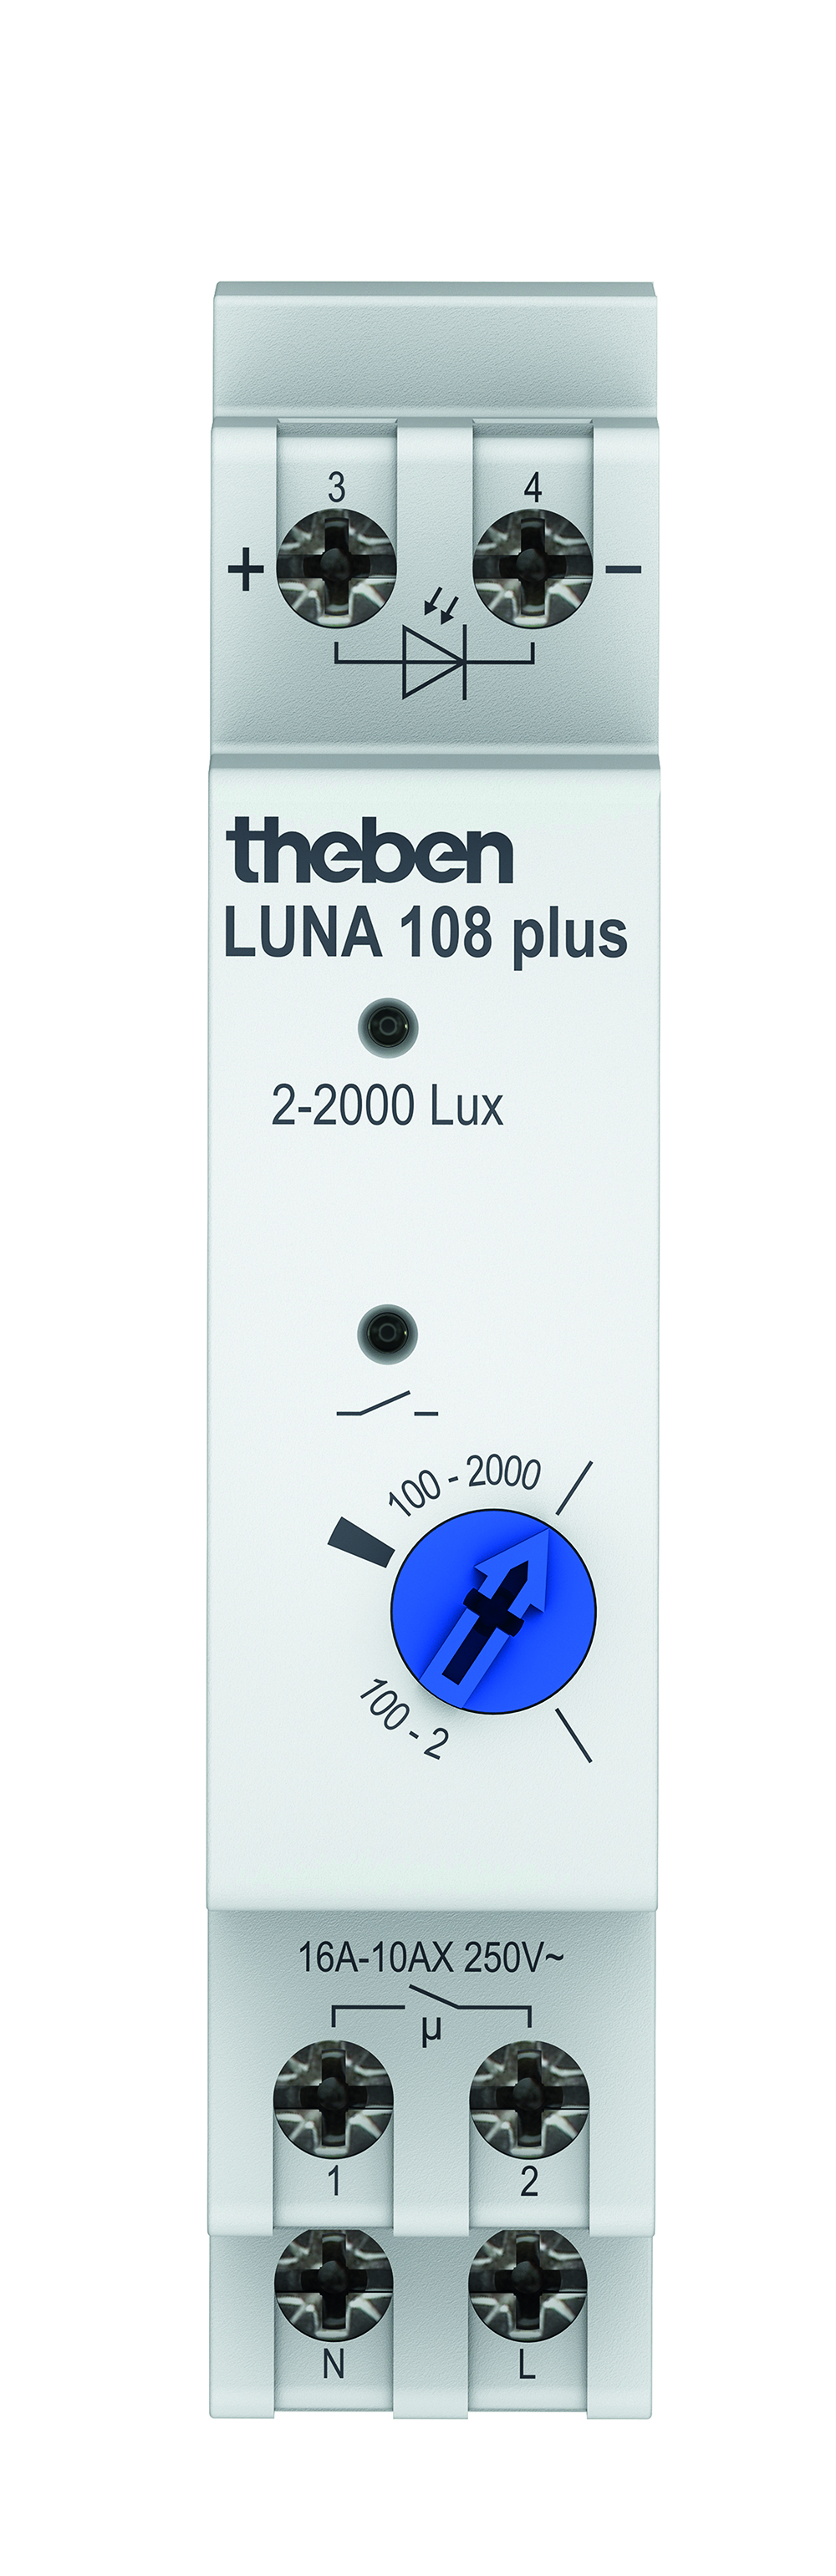 Theben Dämmerungsschalter LUNA 108 plus EL - 1080900